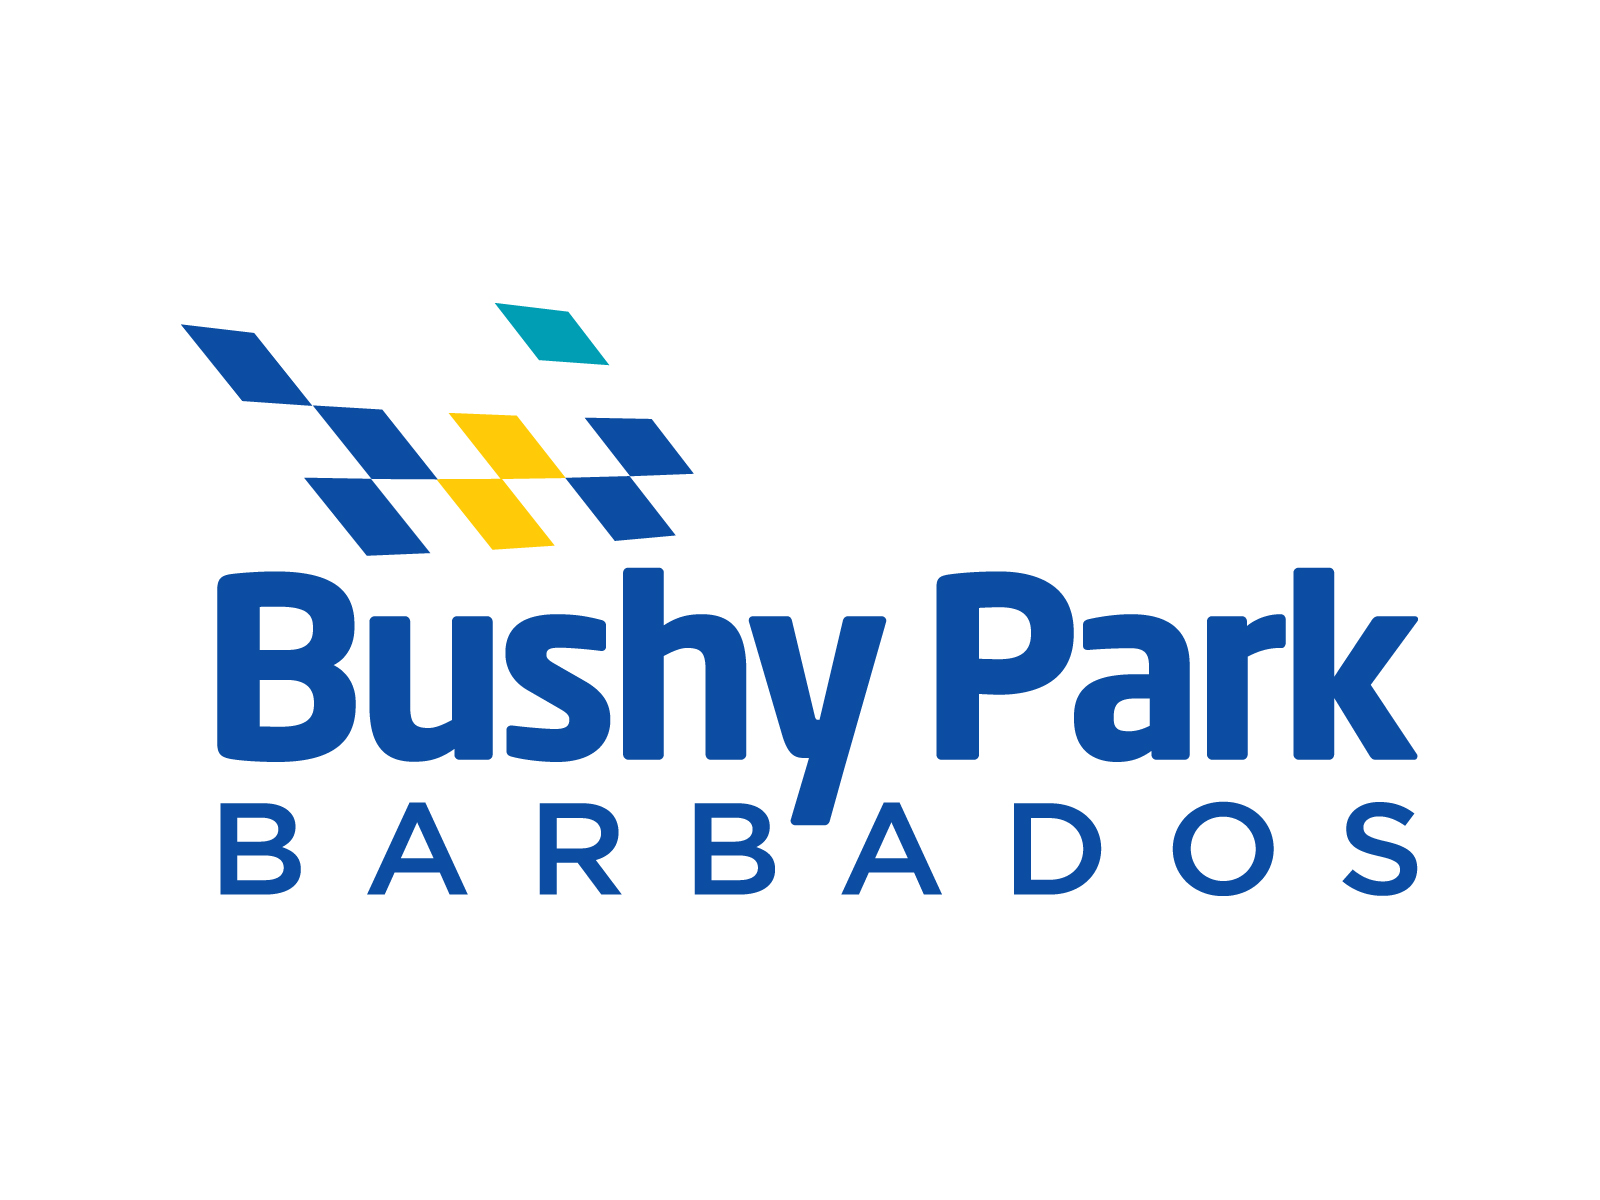 Bushy Park Barbados logo